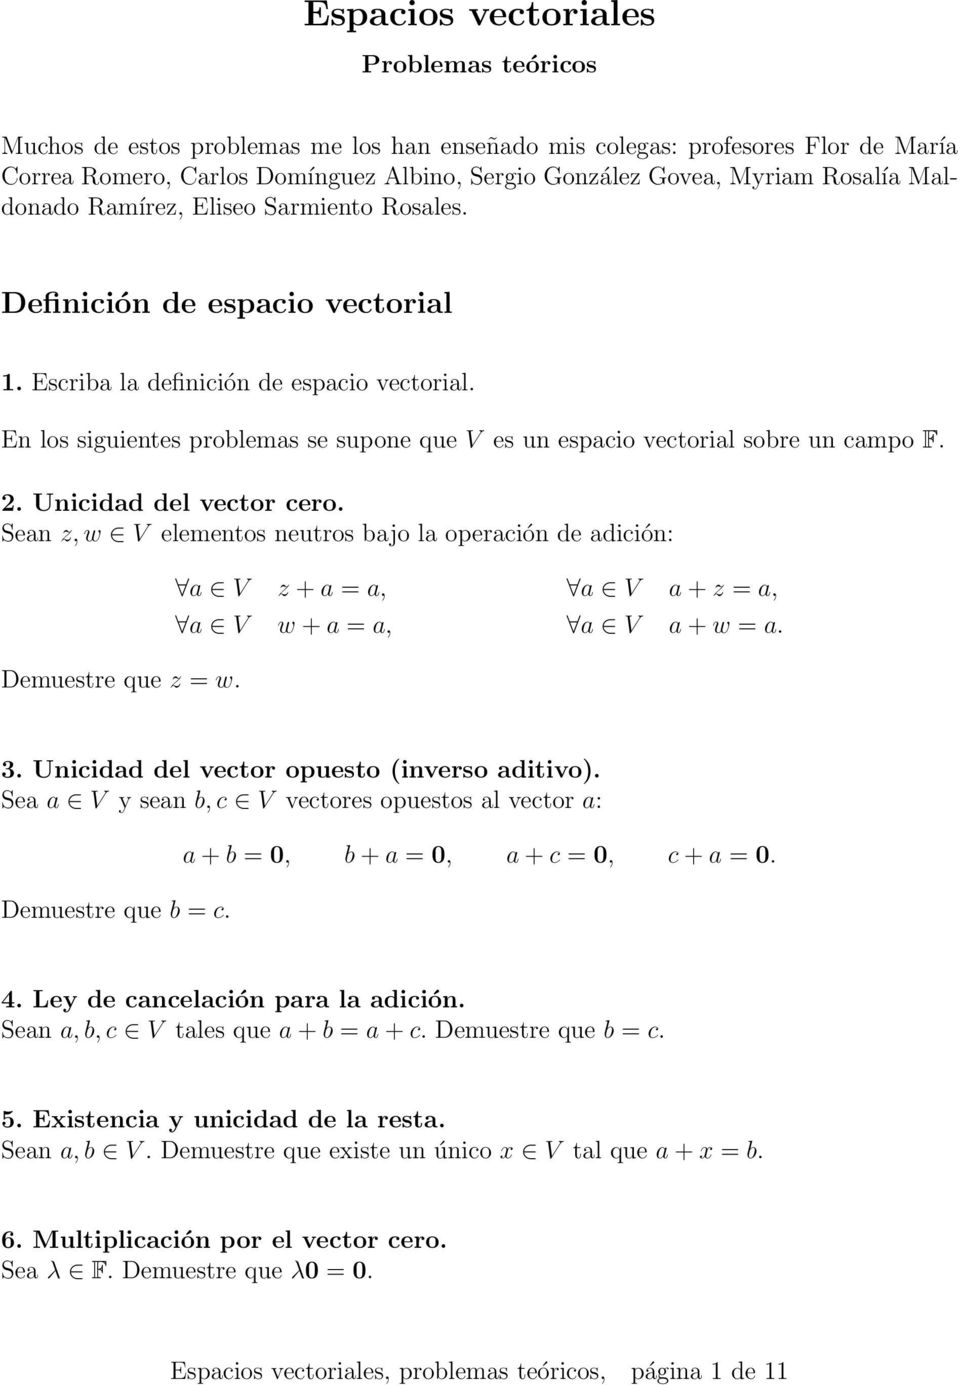 sobre un campo F 2 Unicidad del vector cero Sean z, w V elementos neutros bajo la operación de adición: Demuestre que z = w a V z + a = a, a V a + z = a, a V w + a = a, a V a + w = a 3 Unicidad del